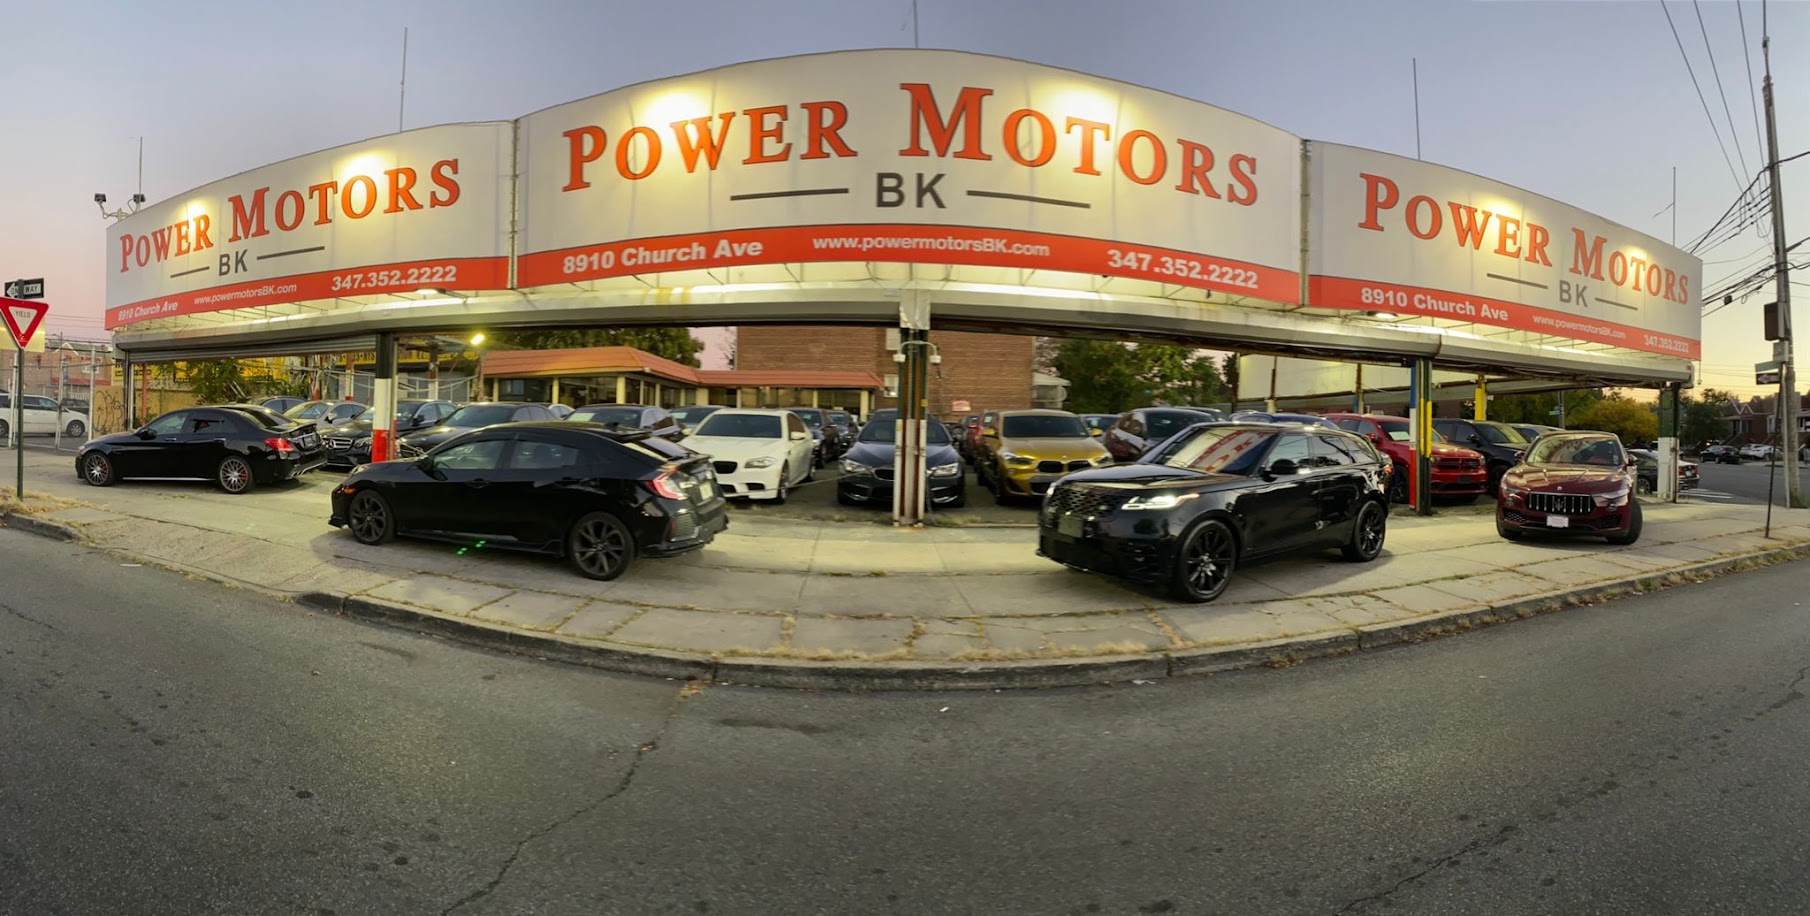 Power Motors Brooklyn - Power Motors BK Used Car Dealer Brooklyn NY